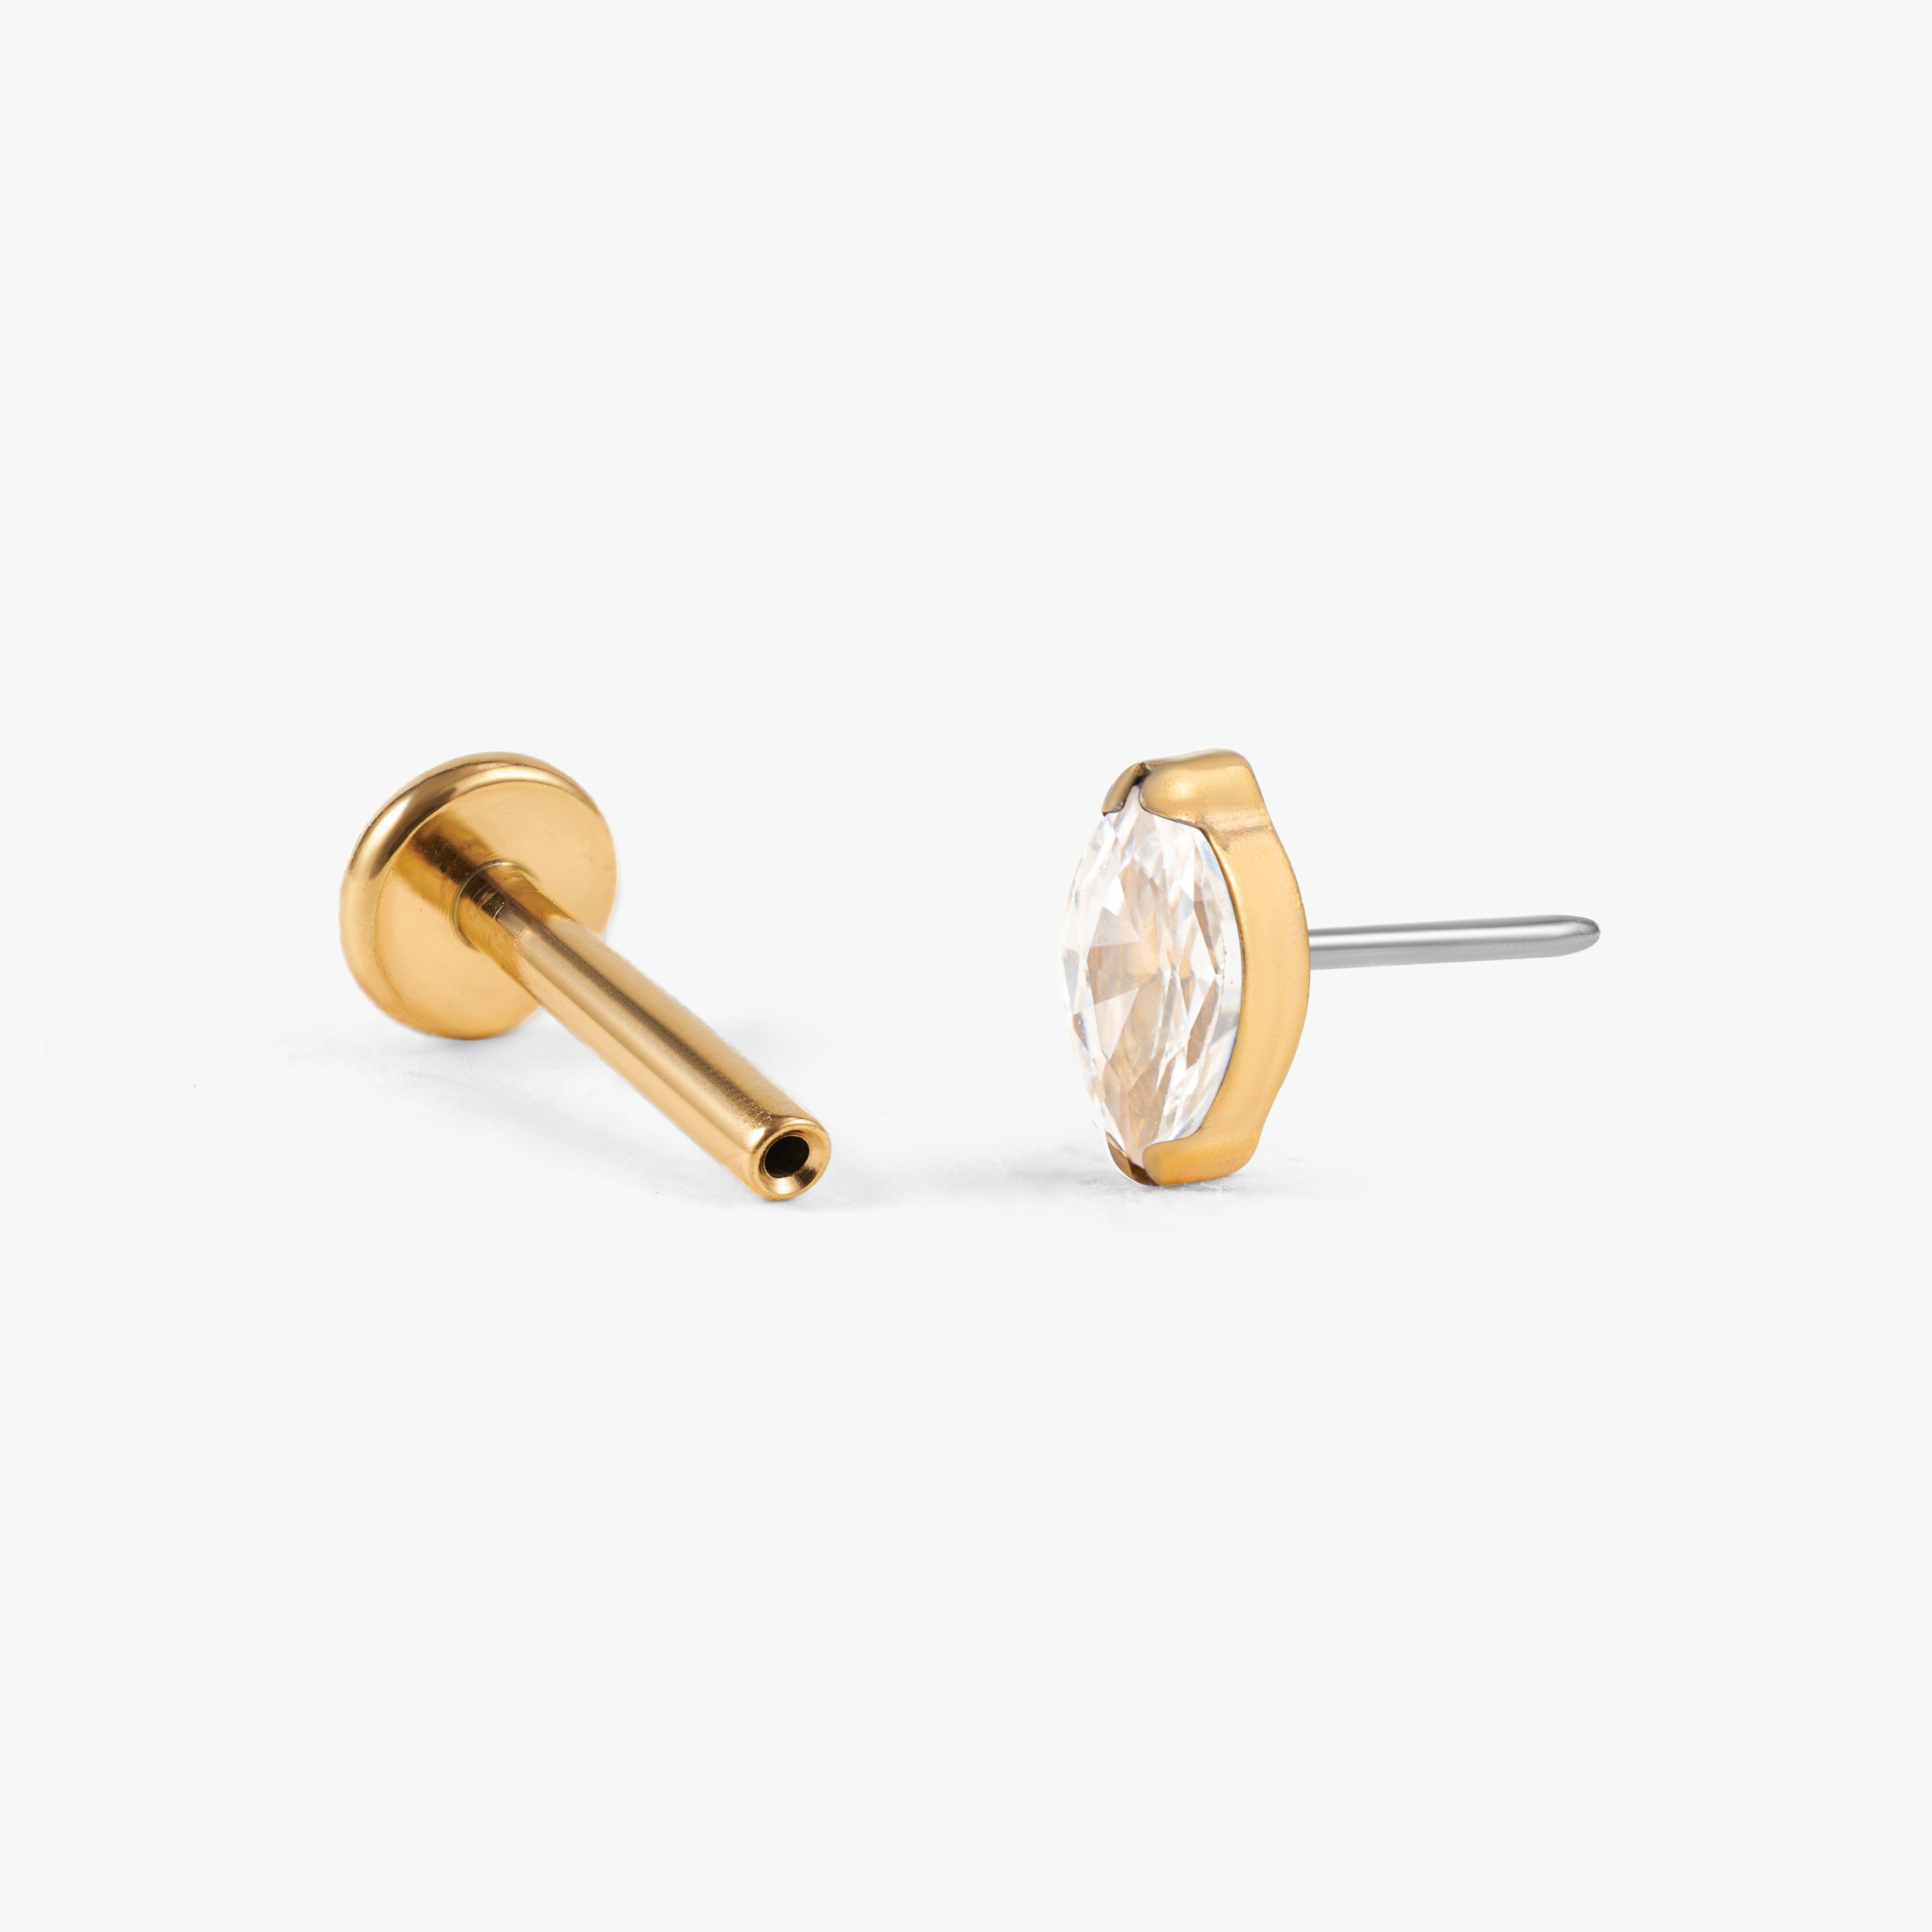 Zirca / Black x Gold | Stud earrings for men, Gold earrings for men,  Diamond studs for men